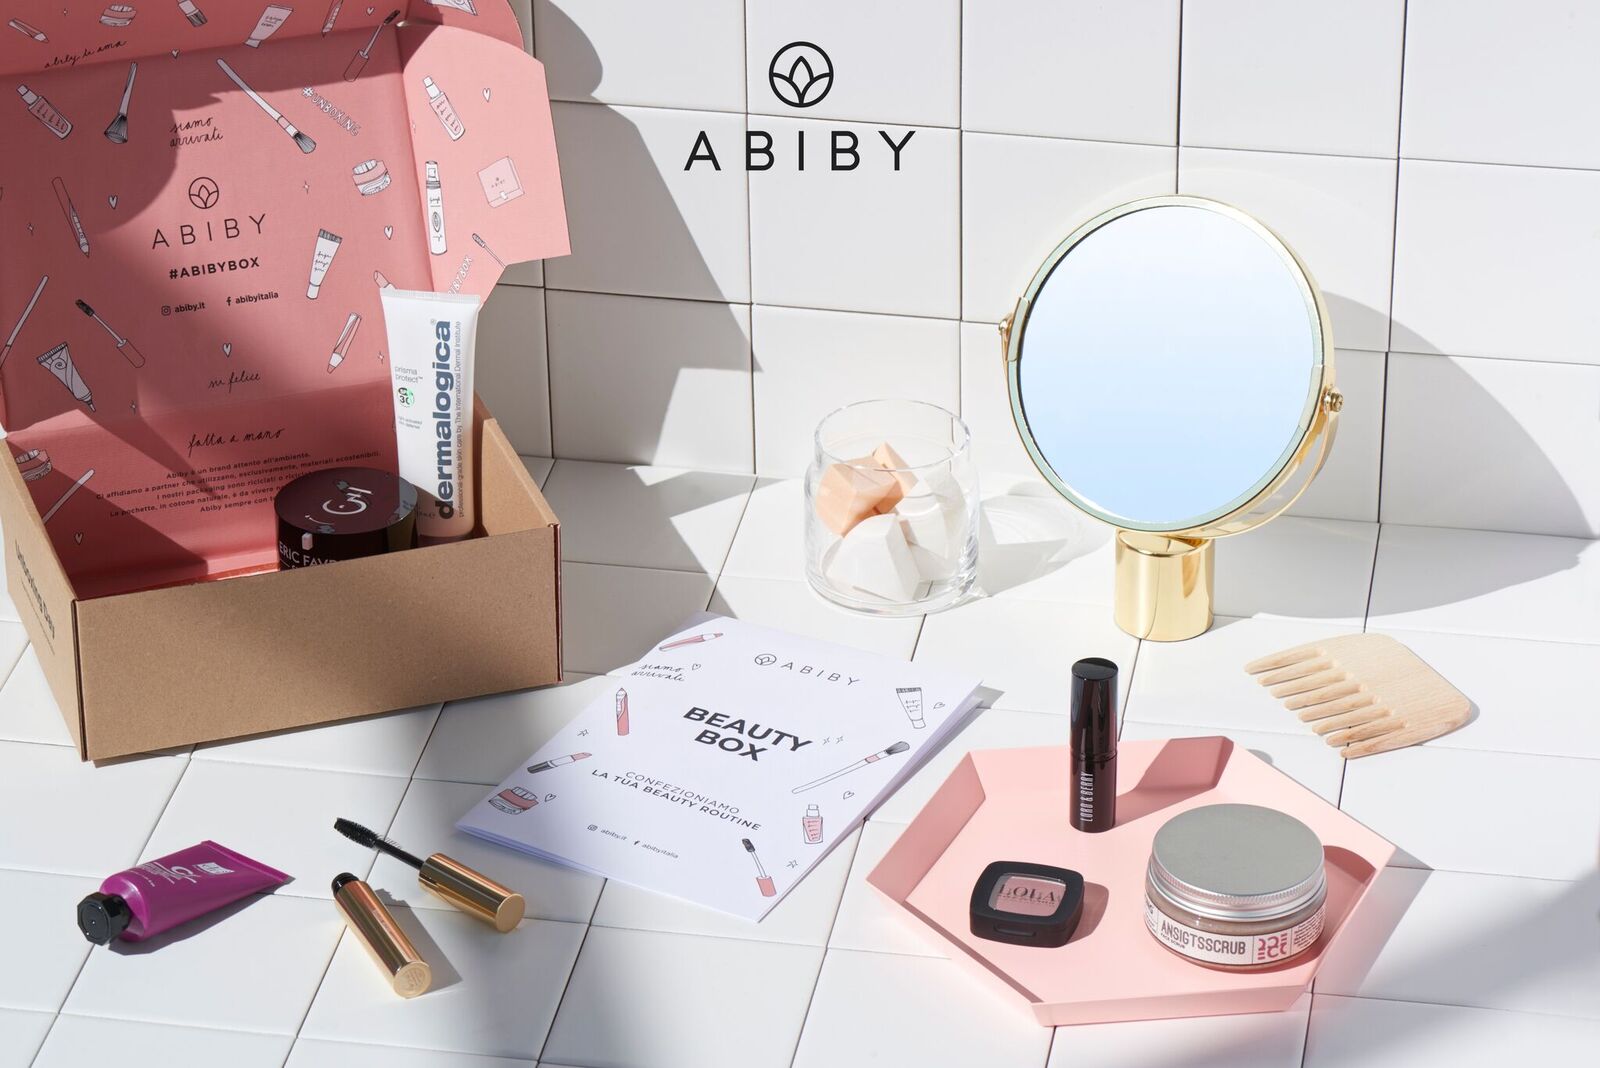 Abiby beauty box